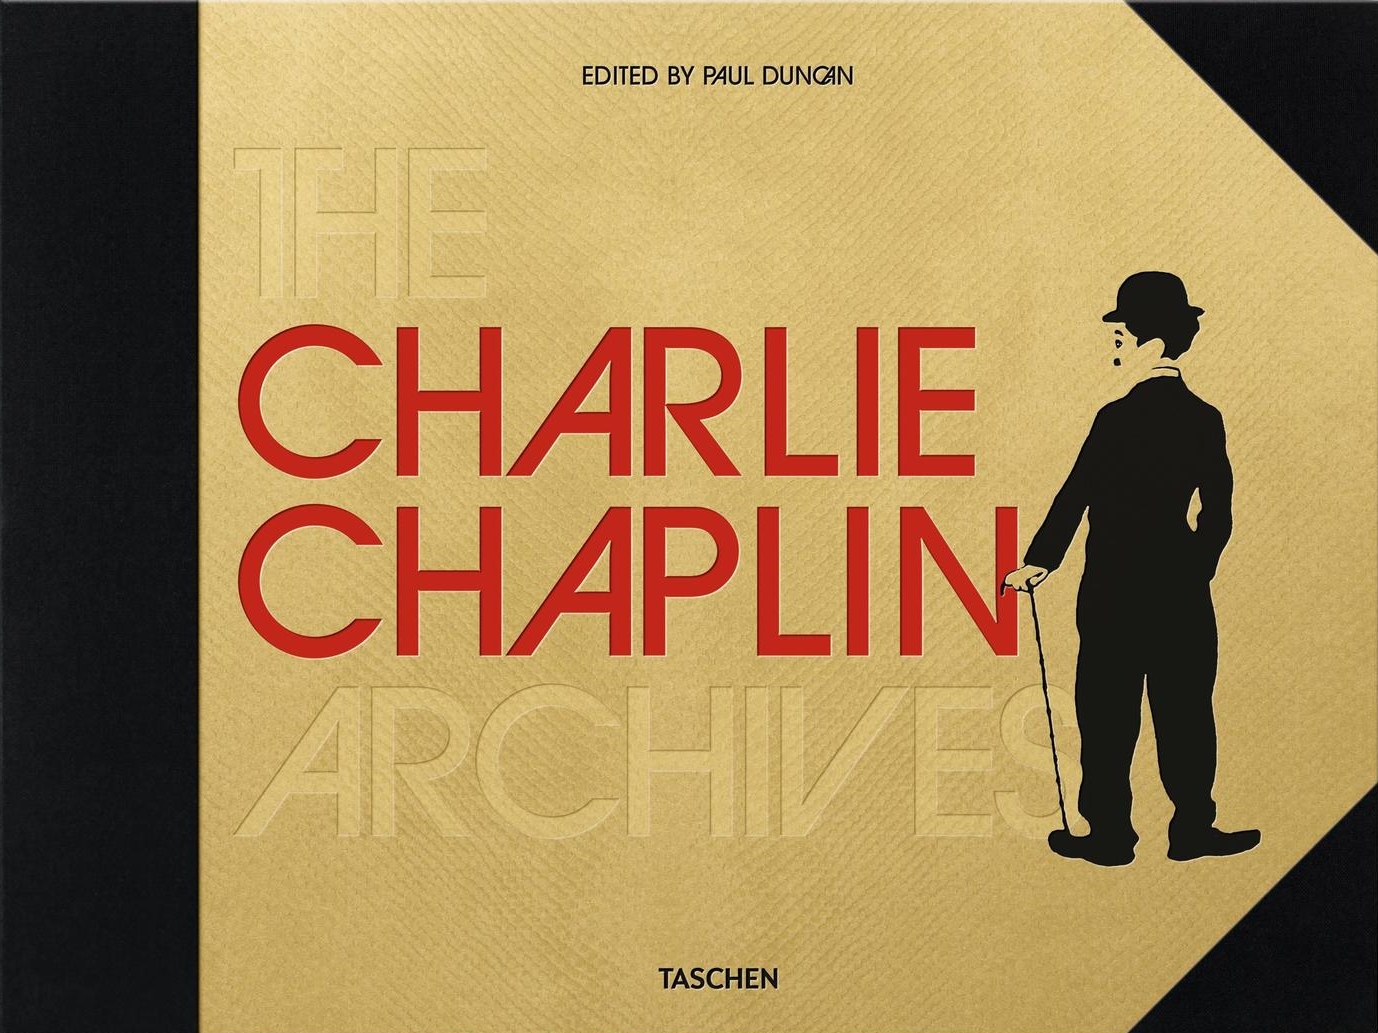 Taschen Chaplin Archives